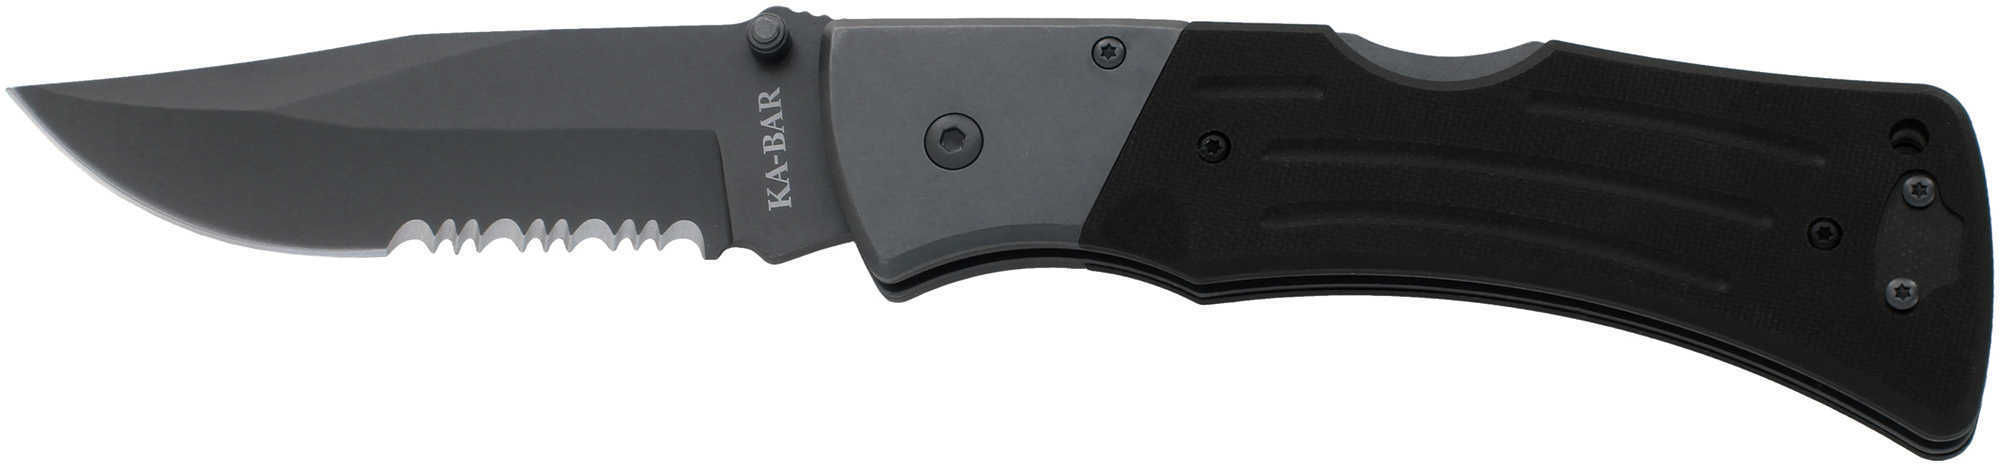 Ka-Bar G10 Mule Folder Clip Blade 4" Serrated Edge Knife Md: 2-3063-9-img-1